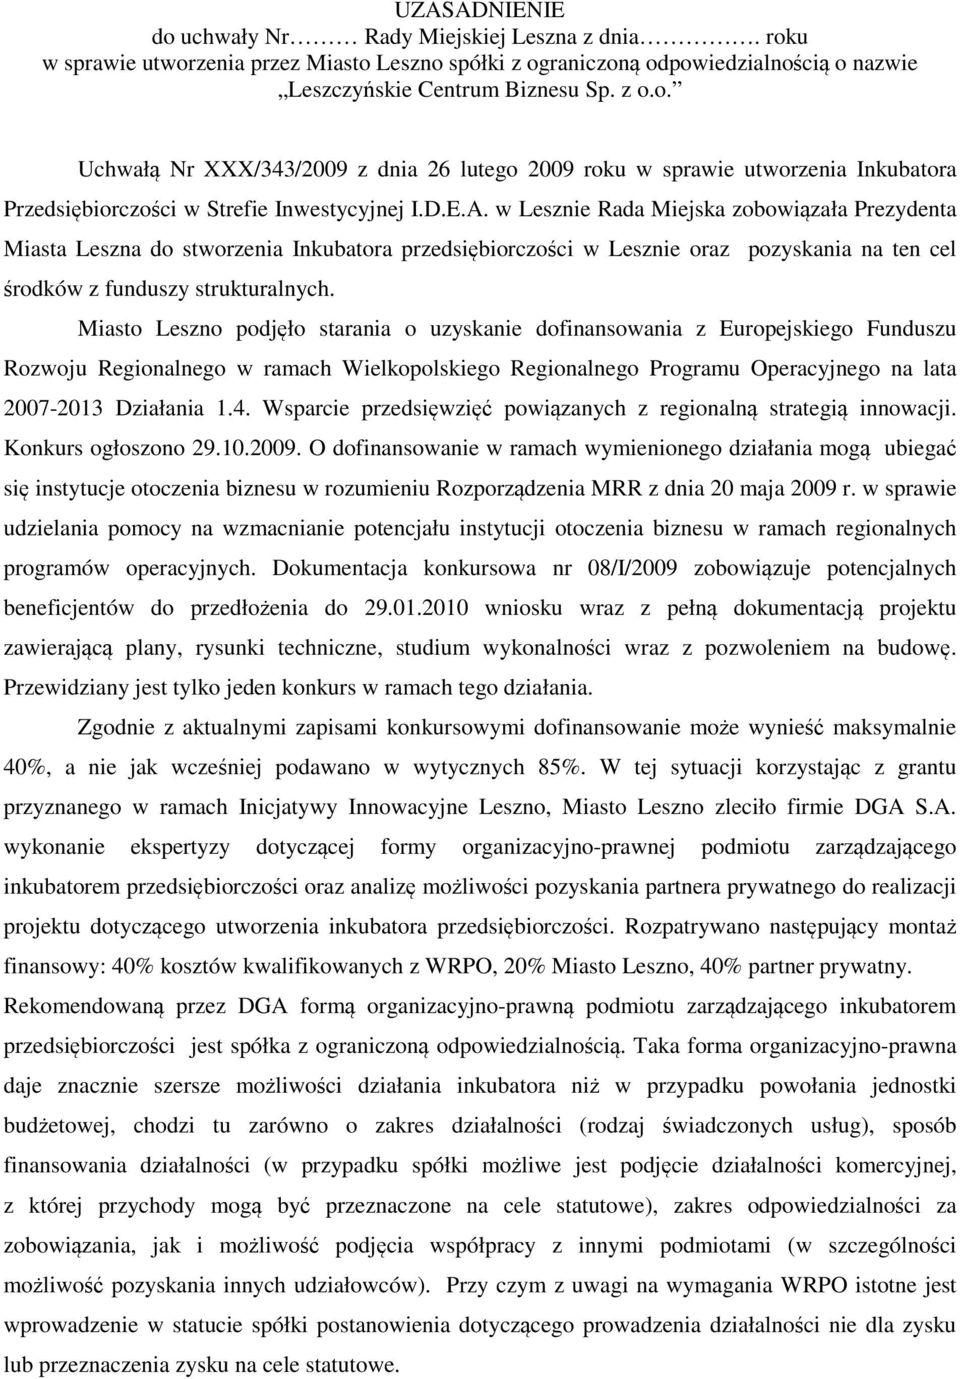 Miasto Leszno podjęło starania o uzyskanie dofinansowania z Europejskiego Funduszu Rozwoju Regionalnego w ramach Wielkopolskiego Regionalnego Programu Operacyjnego na lata 2007-2013 Działania 1.4.